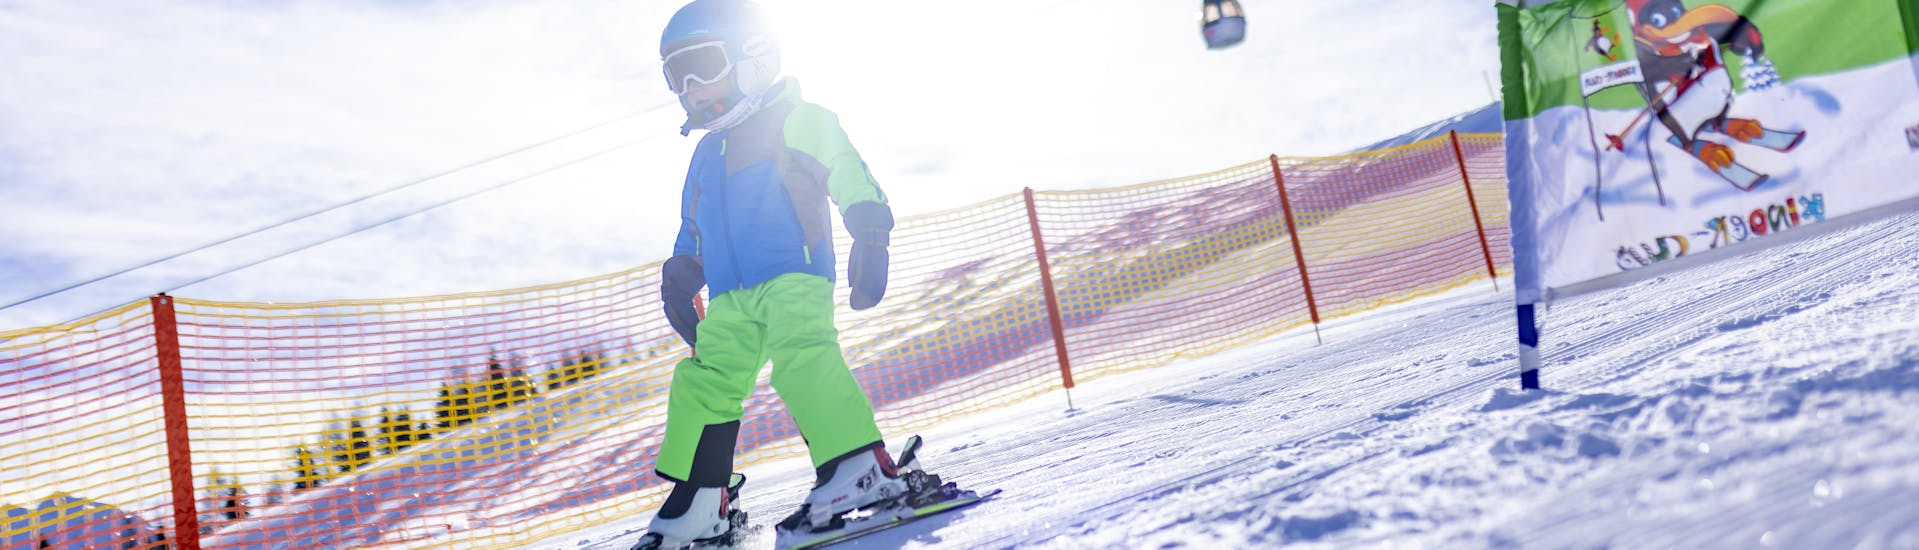 Lezioni di sci per bambini a partire da 4 anni per avanzati.